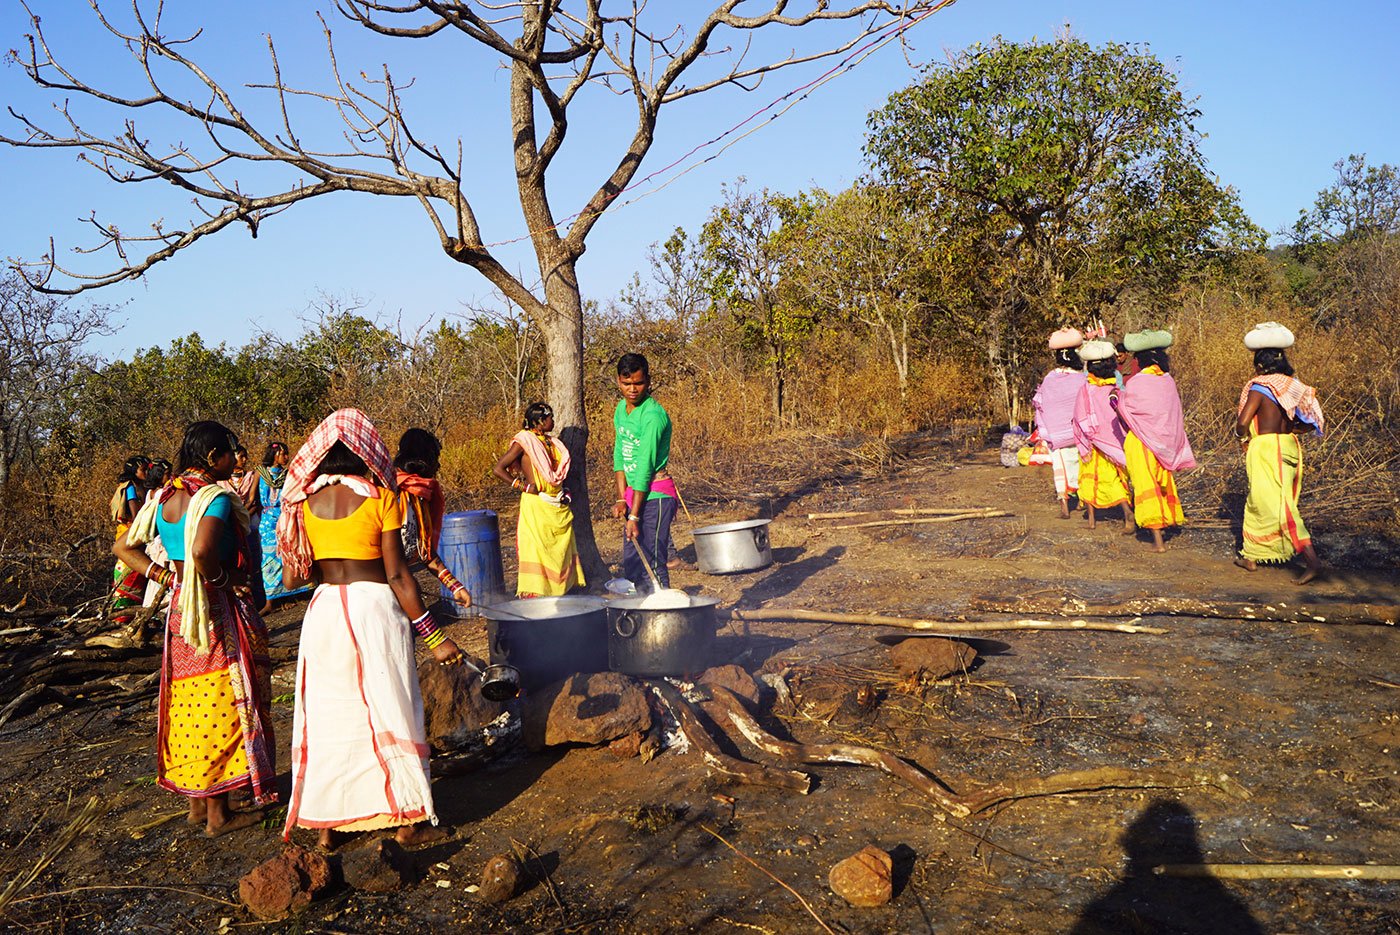 Tribal women cooking in an open field